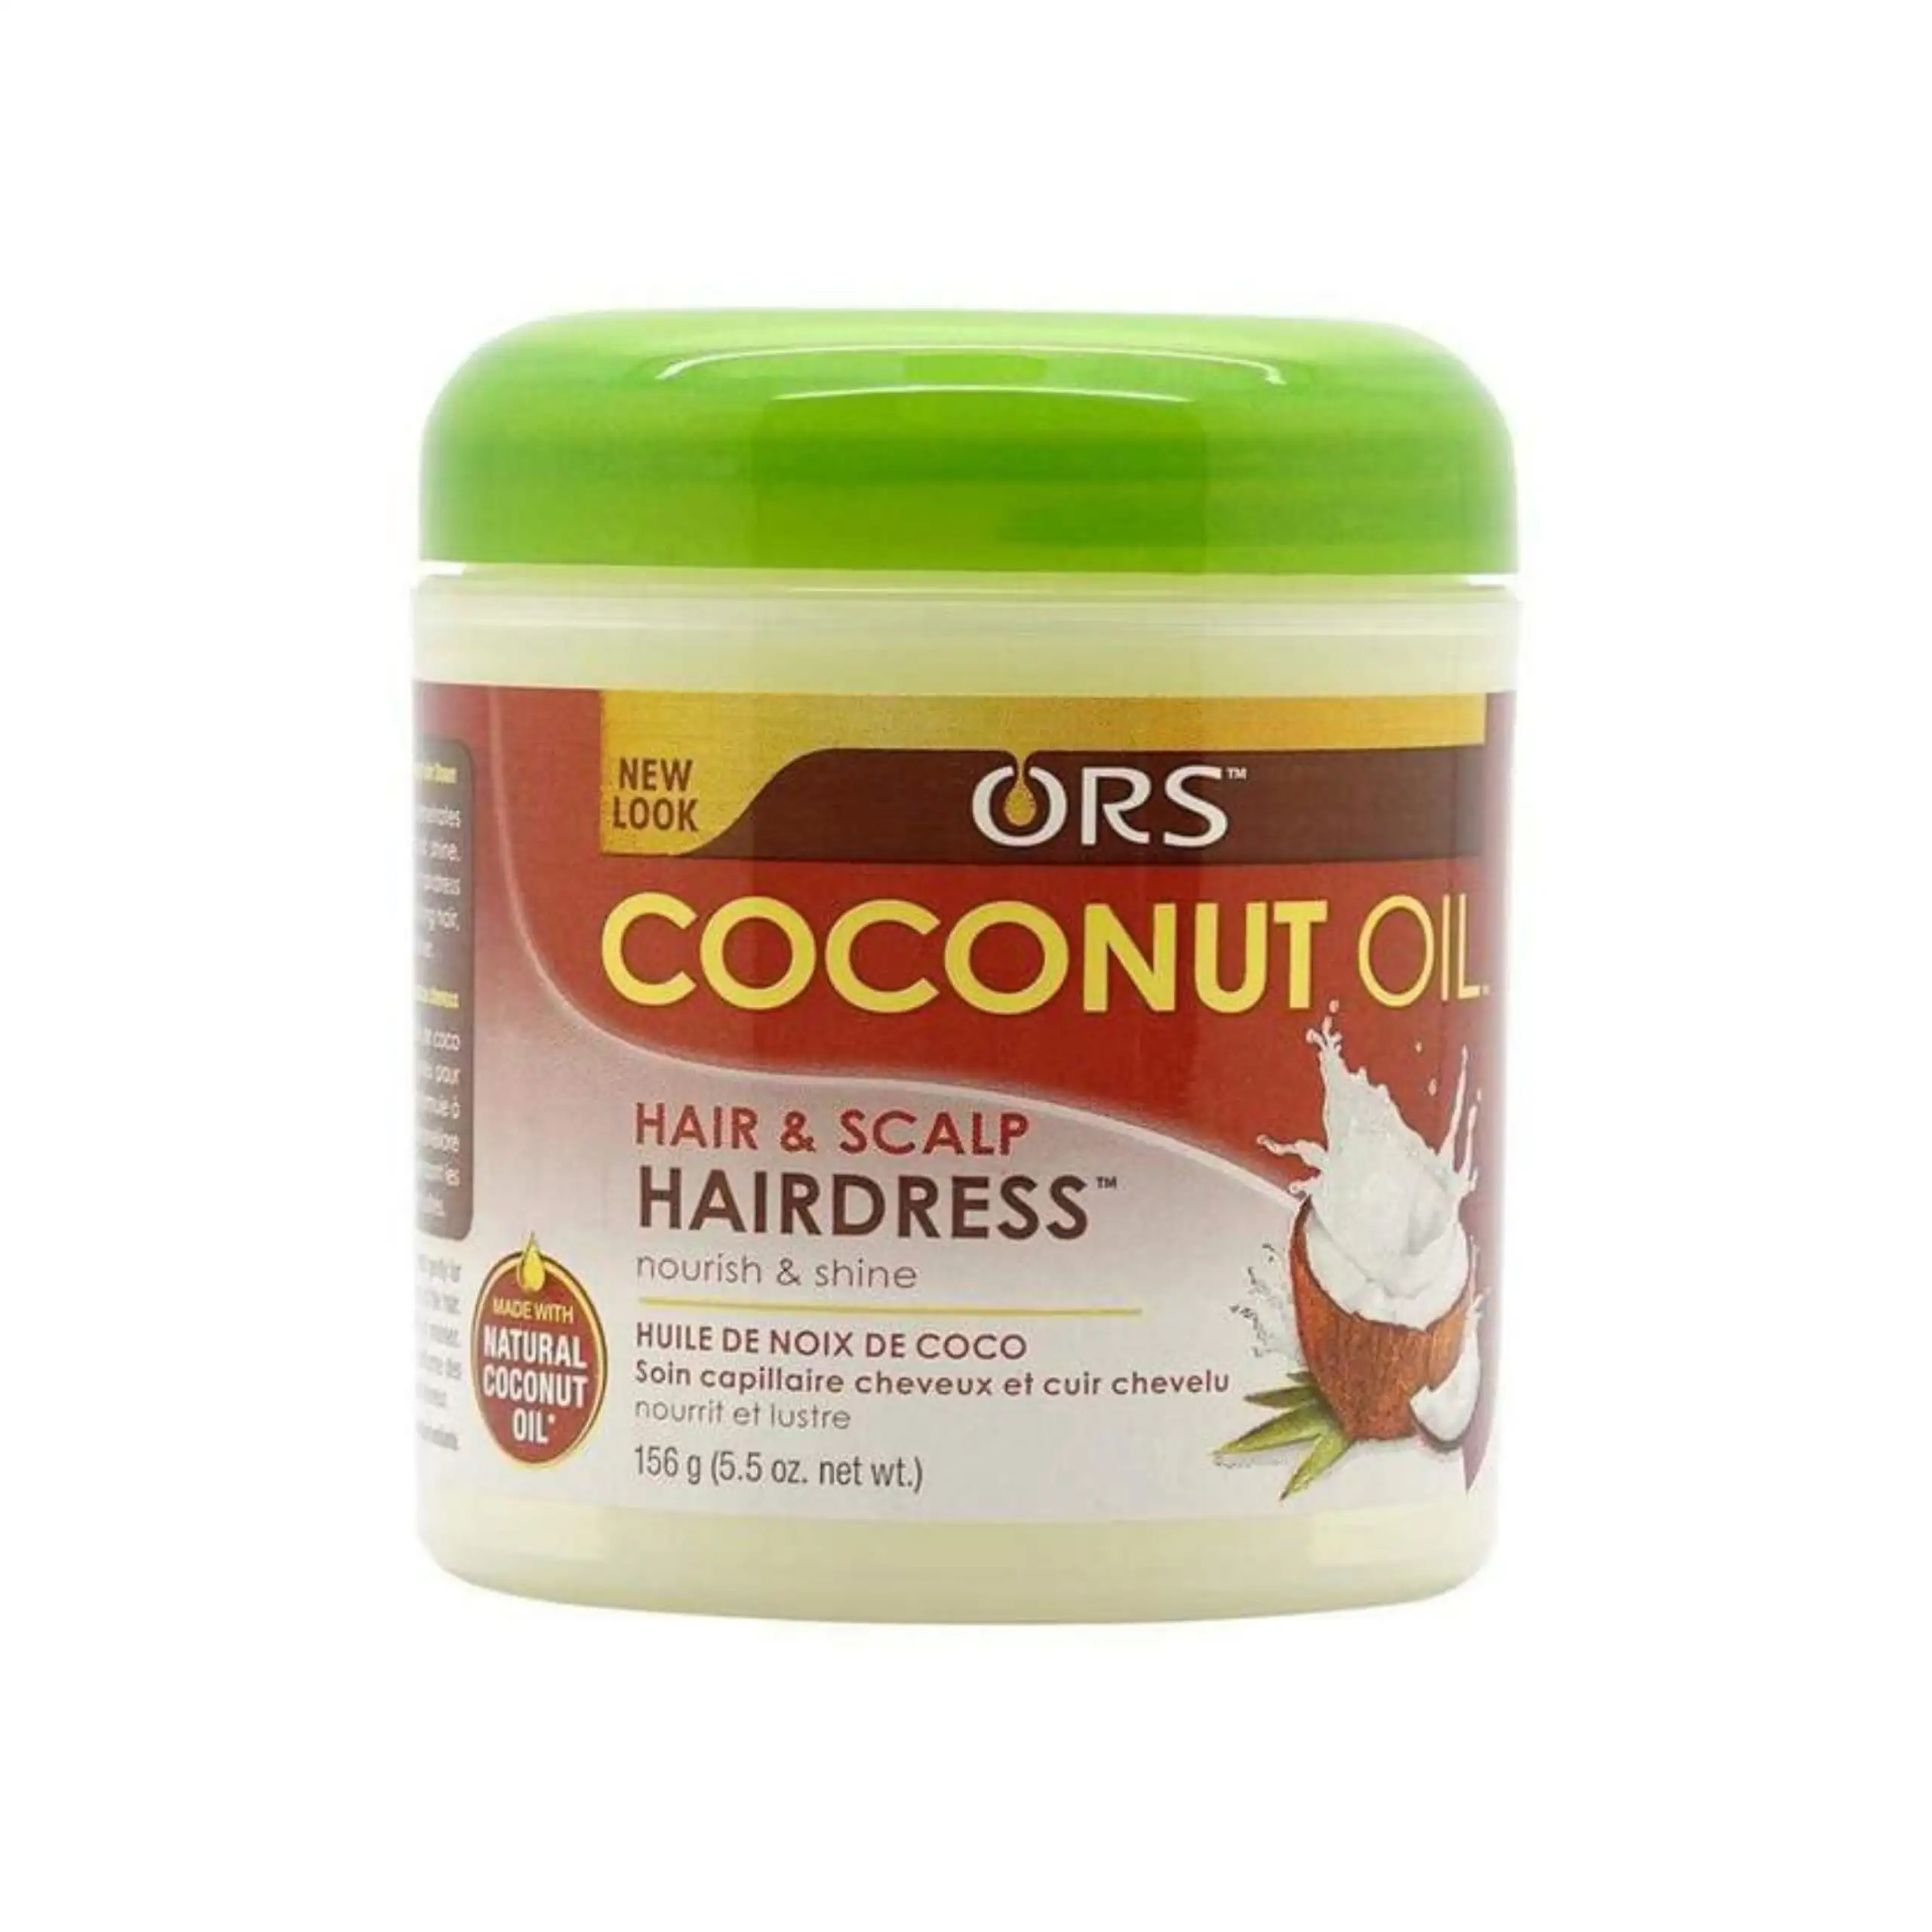 Ors coconut oil hair scalp hairdress 156g_1427. Bienvenue sur DIAYTAR SENEGAL - Où Chaque Article a son Histoire. Découvrez notre sélection méticuleuse de produits qui racontent l'authenticité et la beauté du Sénégal.